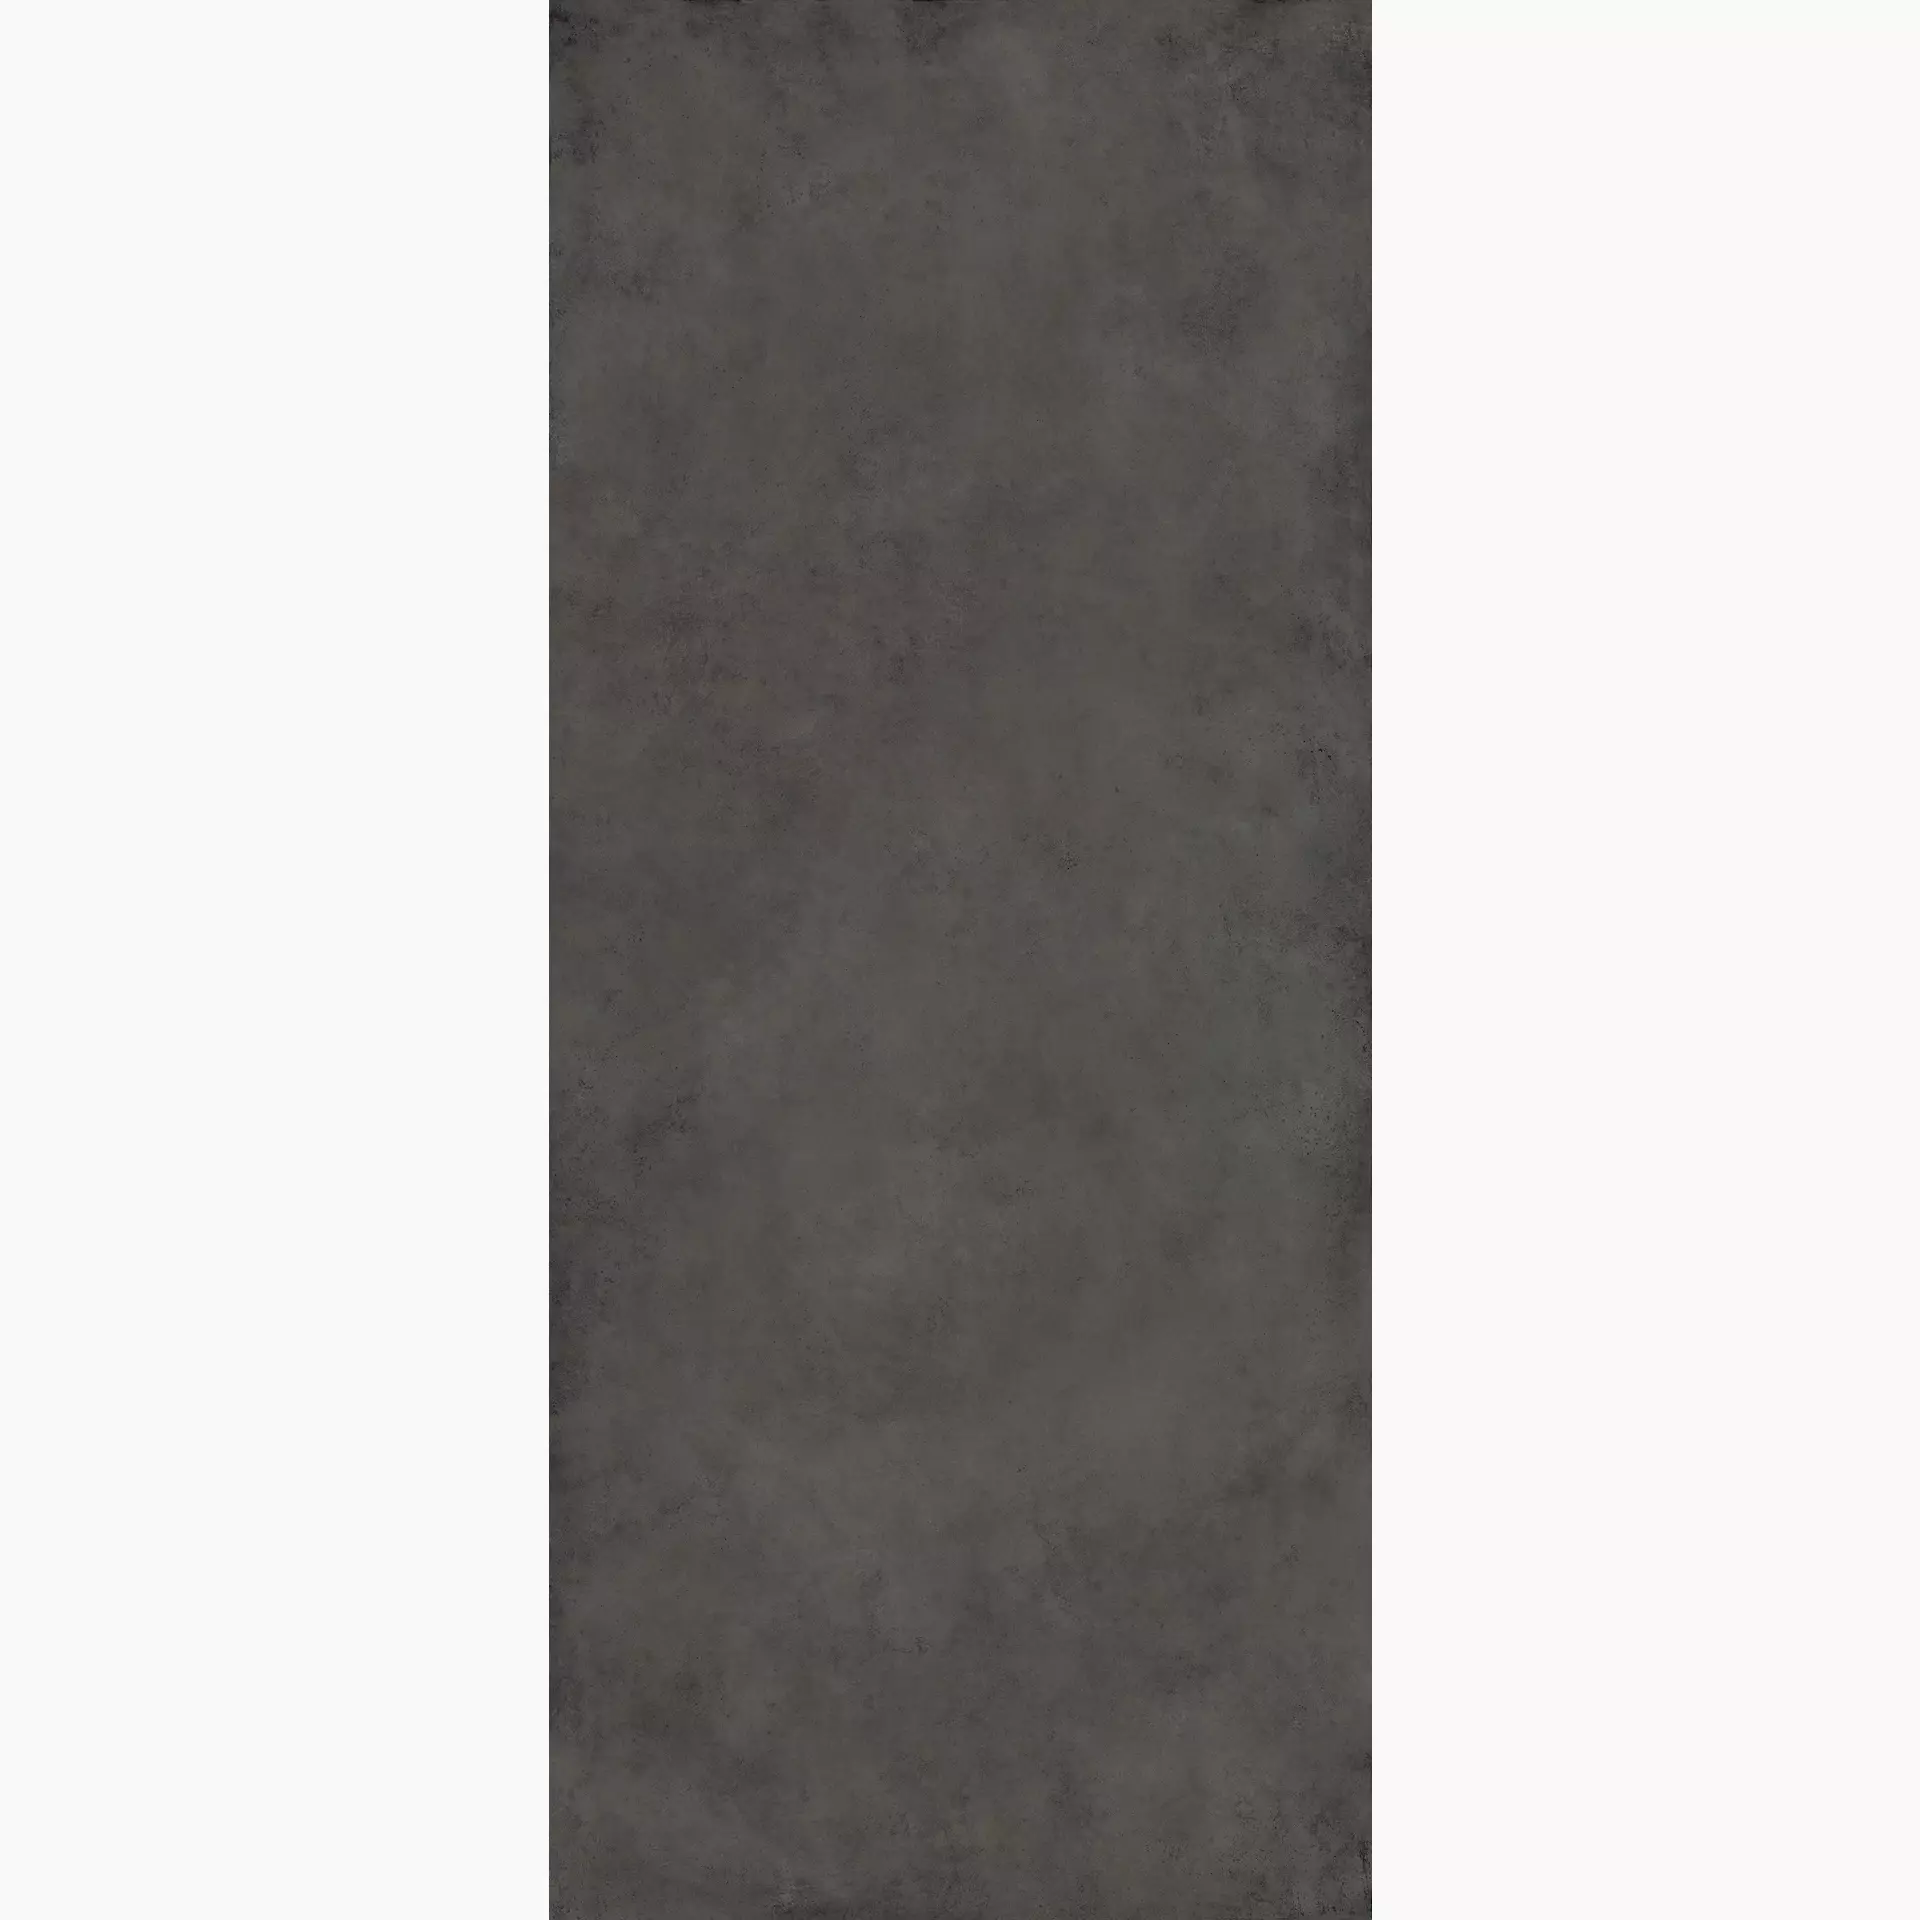 La Fabbrica – AVA Hurban Graphite Naturale 177084 120x280cm rectified 6mm